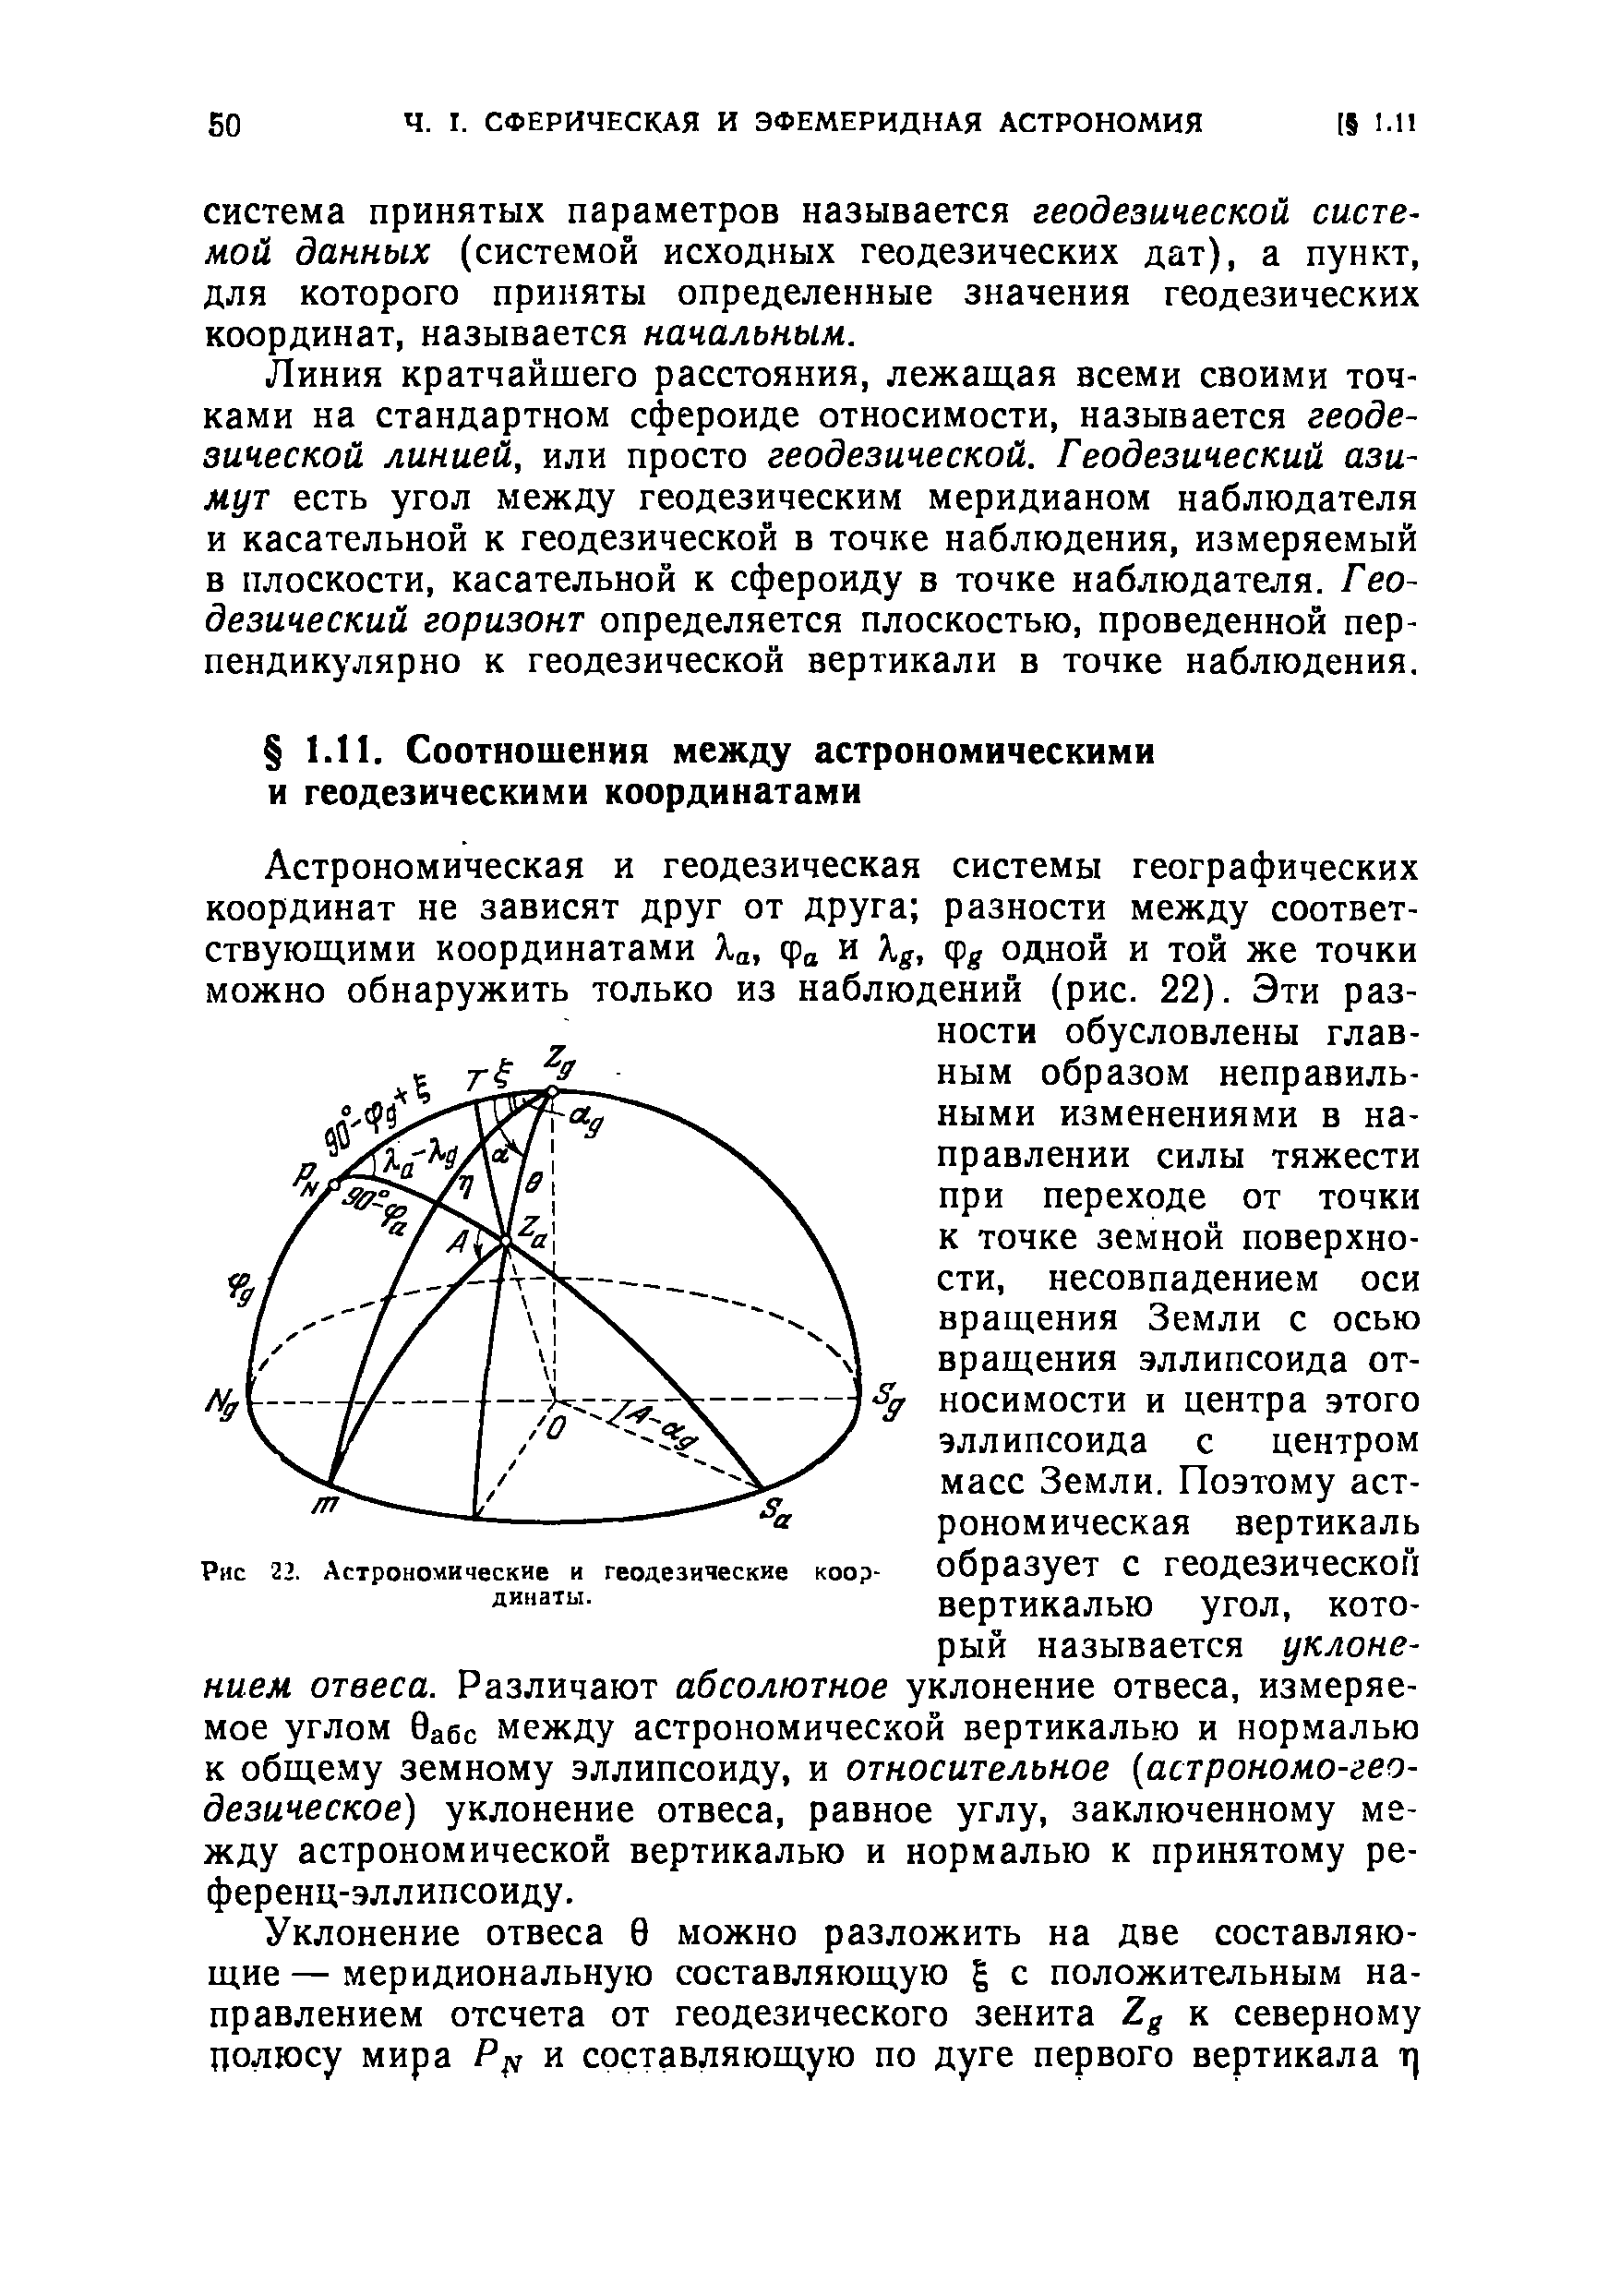 Рнс 22. Астрономические и геодезические координаты.
